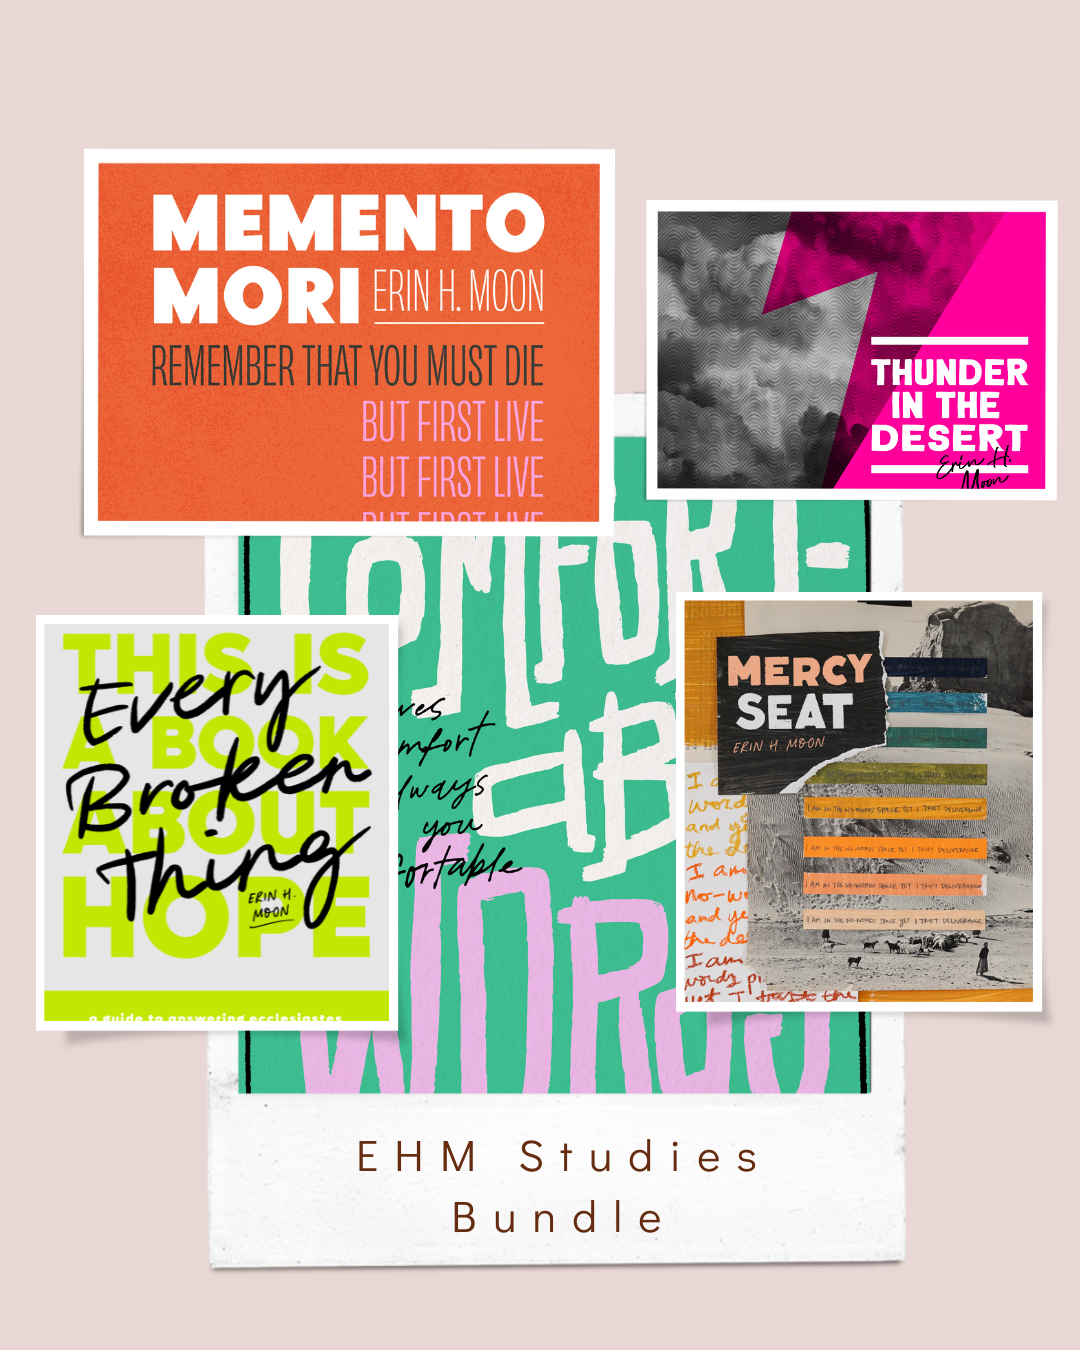 EHM Studies Bundle